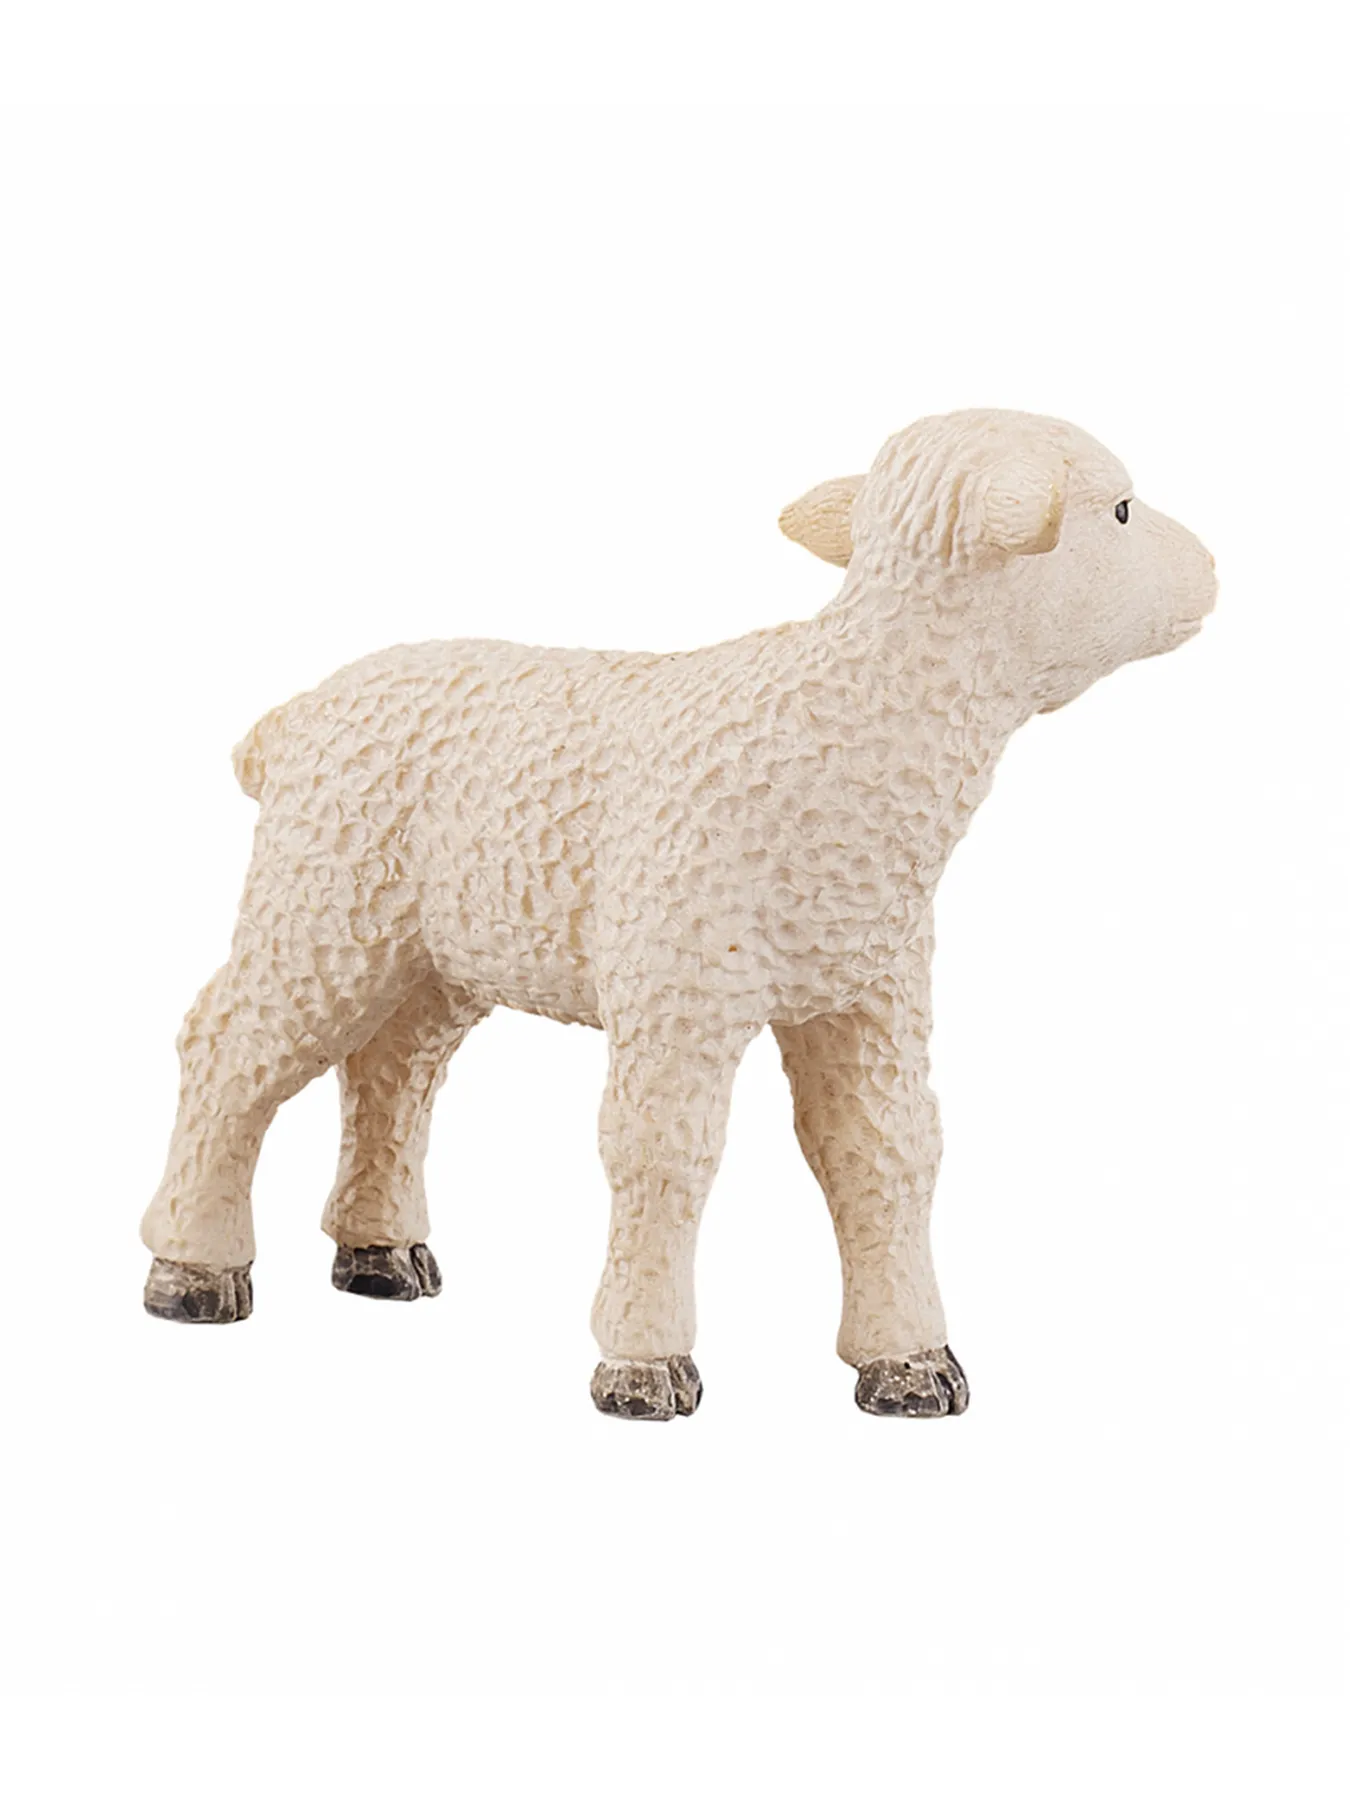 Kunststofffigur Schaf